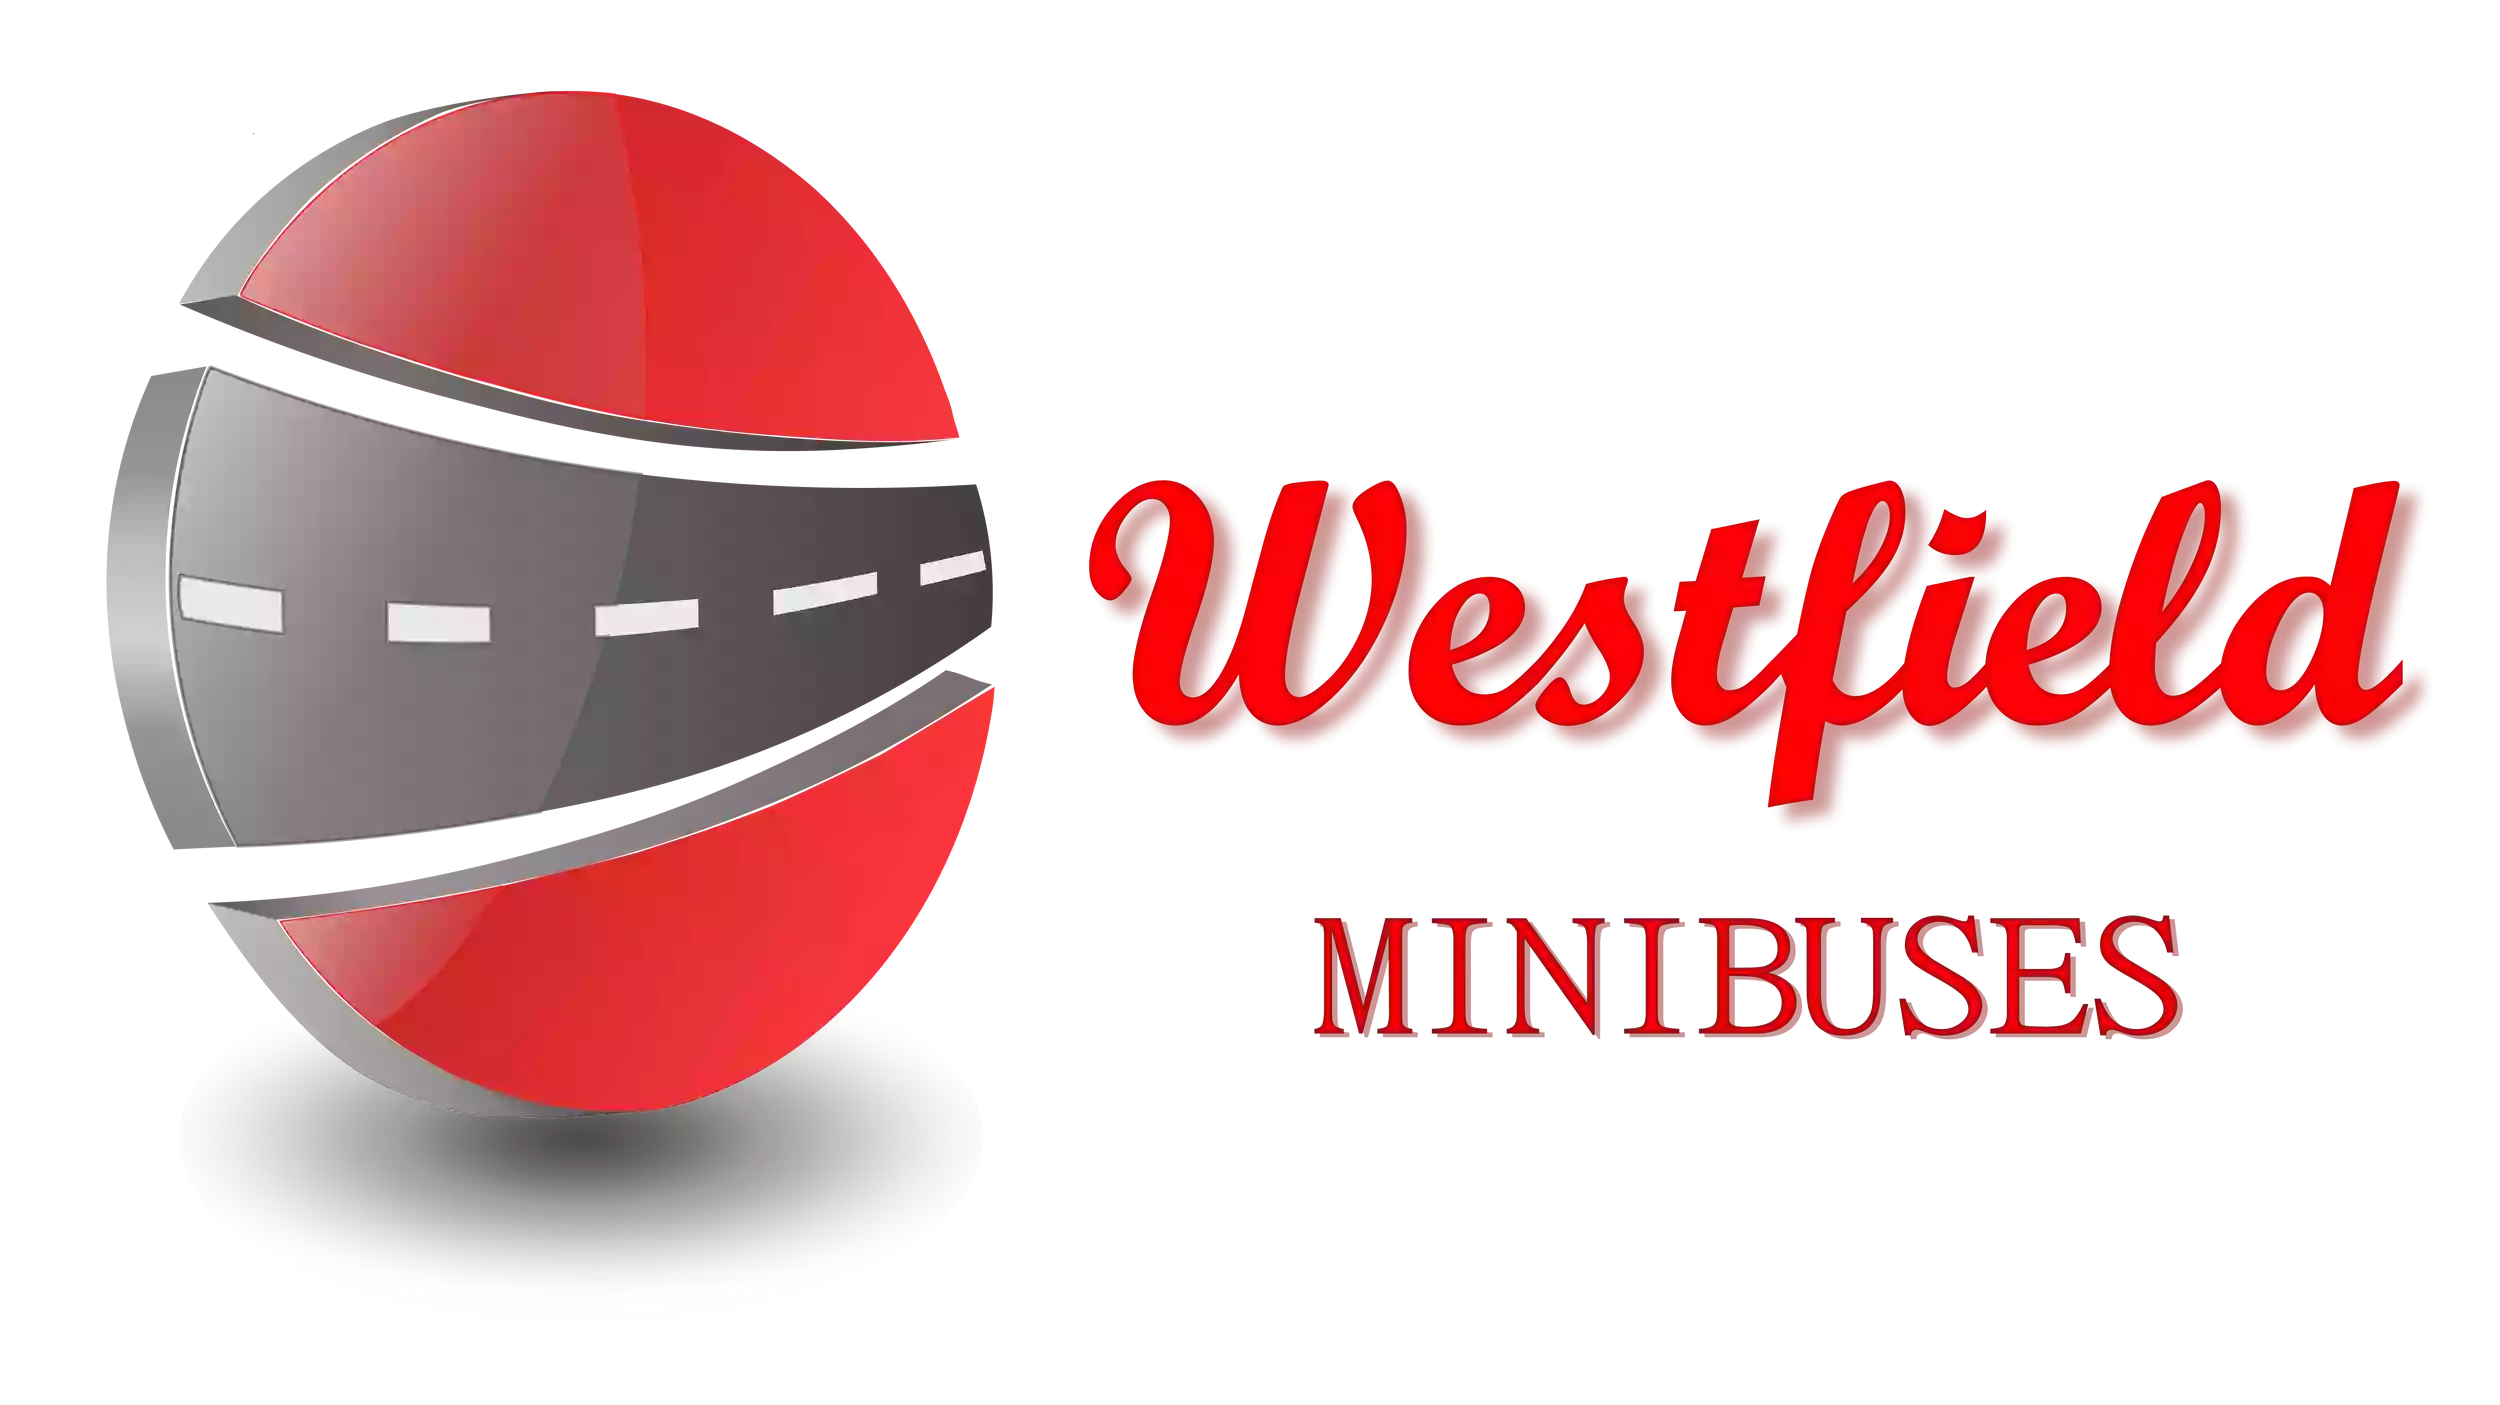 Westfield Minibuses